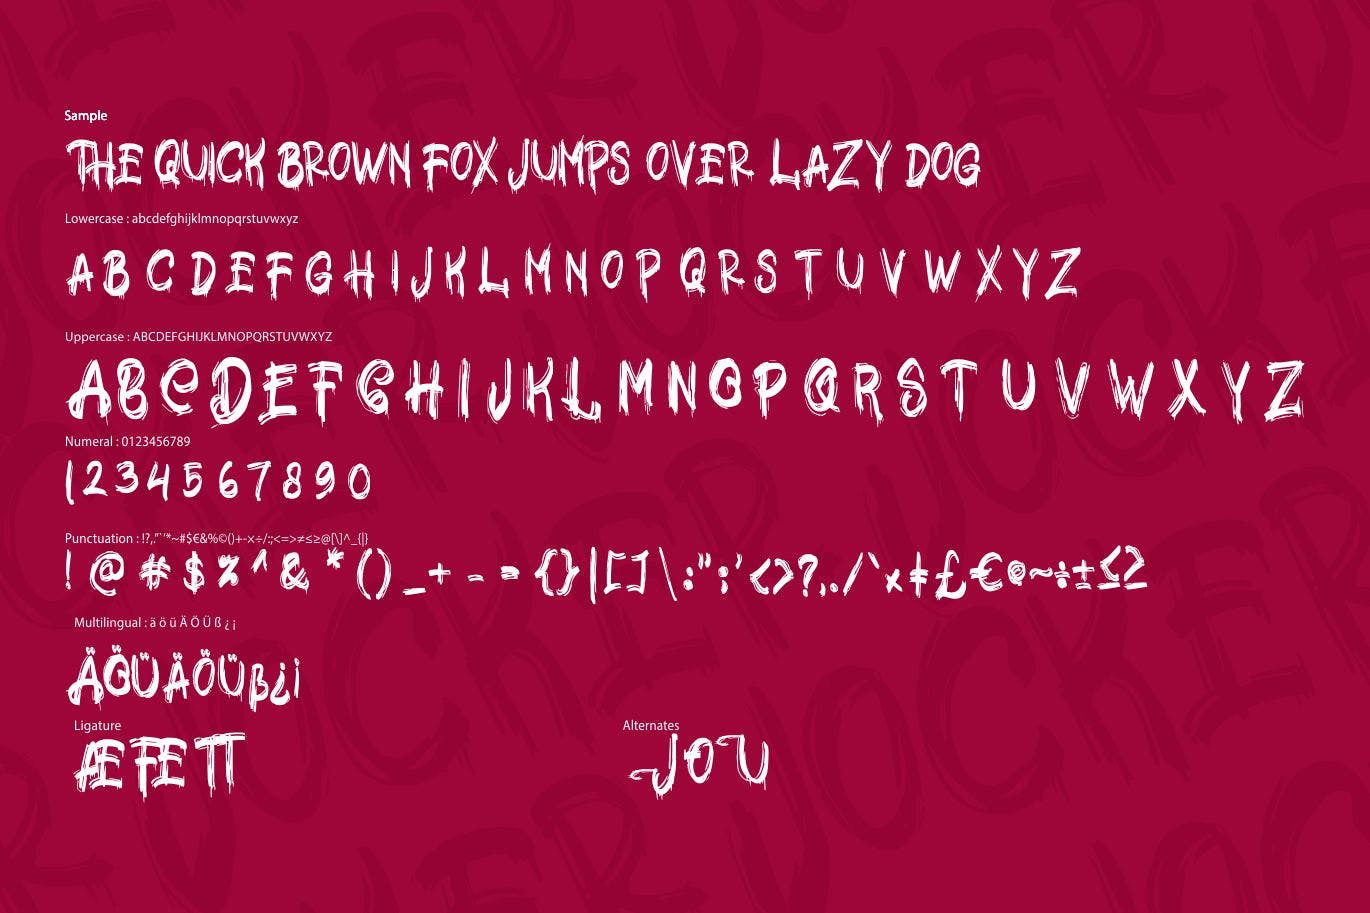 极具个性的英文笔刷装饰字体第一素材精选 Jocker | Psychotype Font Theme插图(5)